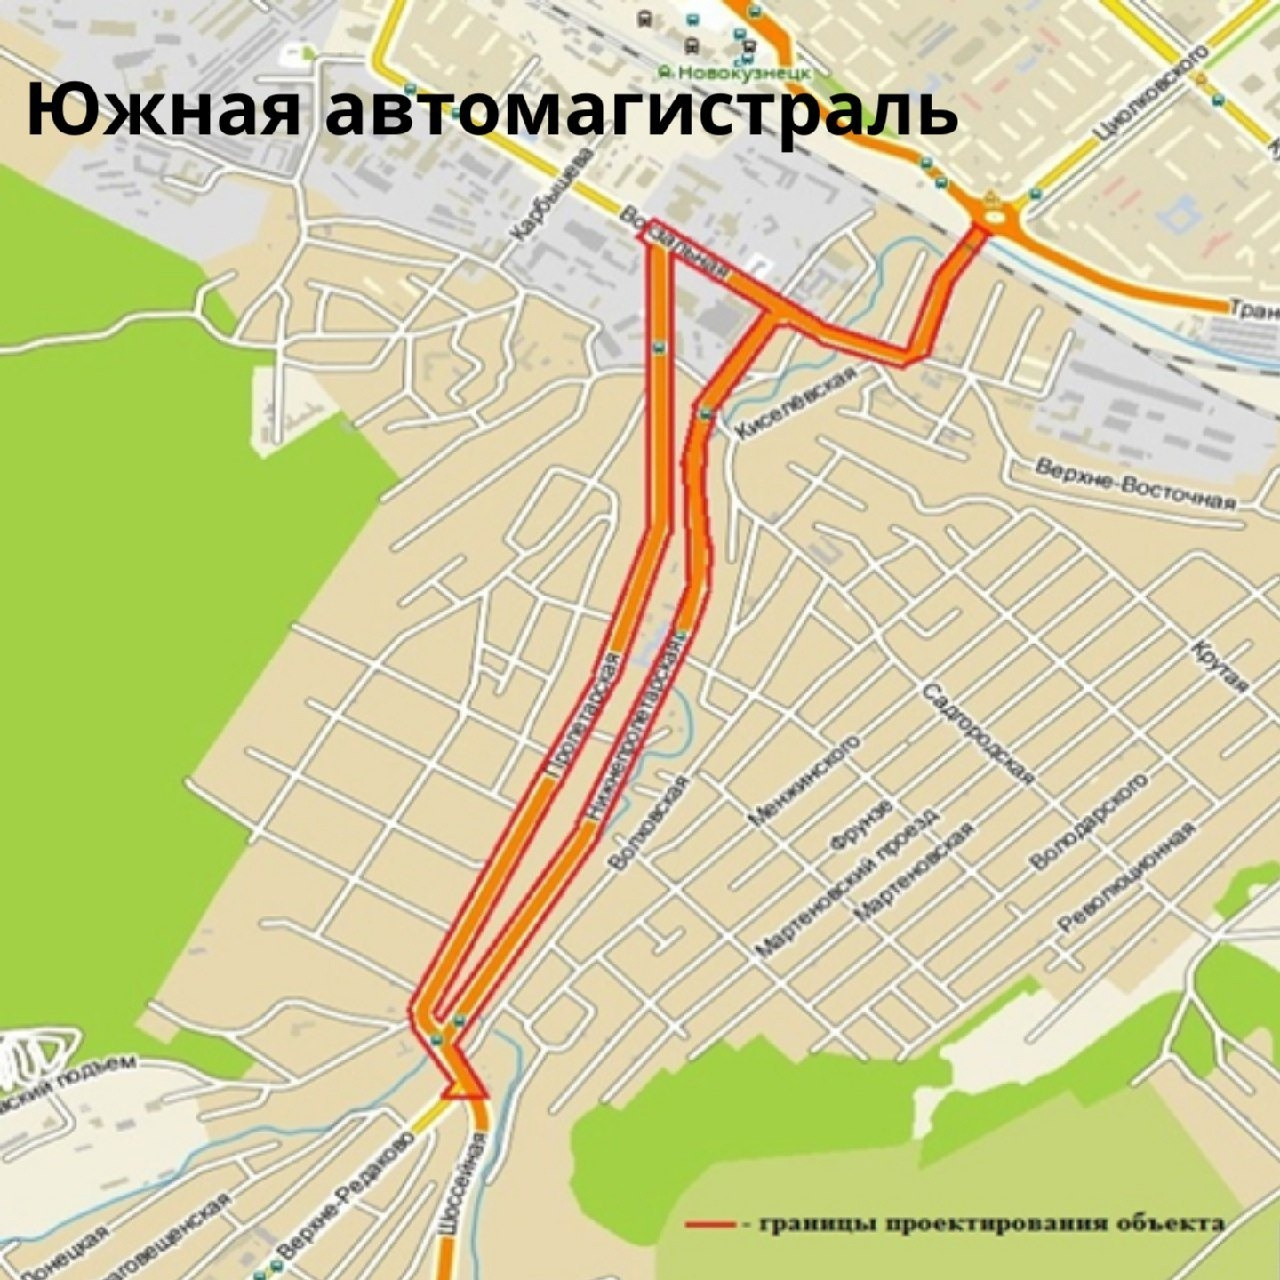 Власти Новокузнецка сообщили о завершении разработки проекта Южной автомагистрали